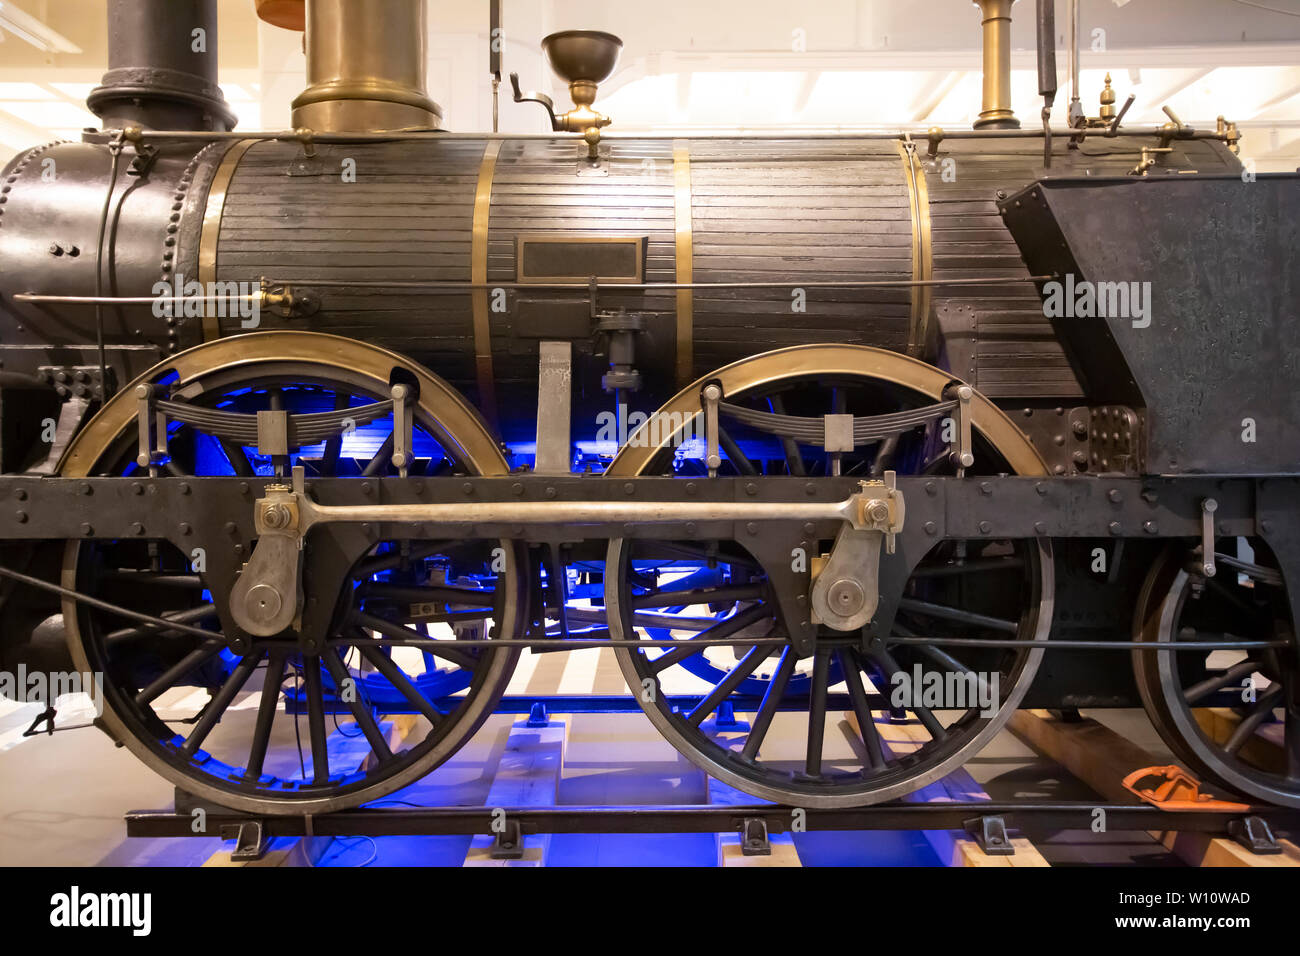 1841 Durch die österreichische Monarchie gekauft diese Lokomotive für frühe europäische Eisenbahnen verwendet wurde und wurde von James, Turner & Evans in England gebaut. Stockfoto